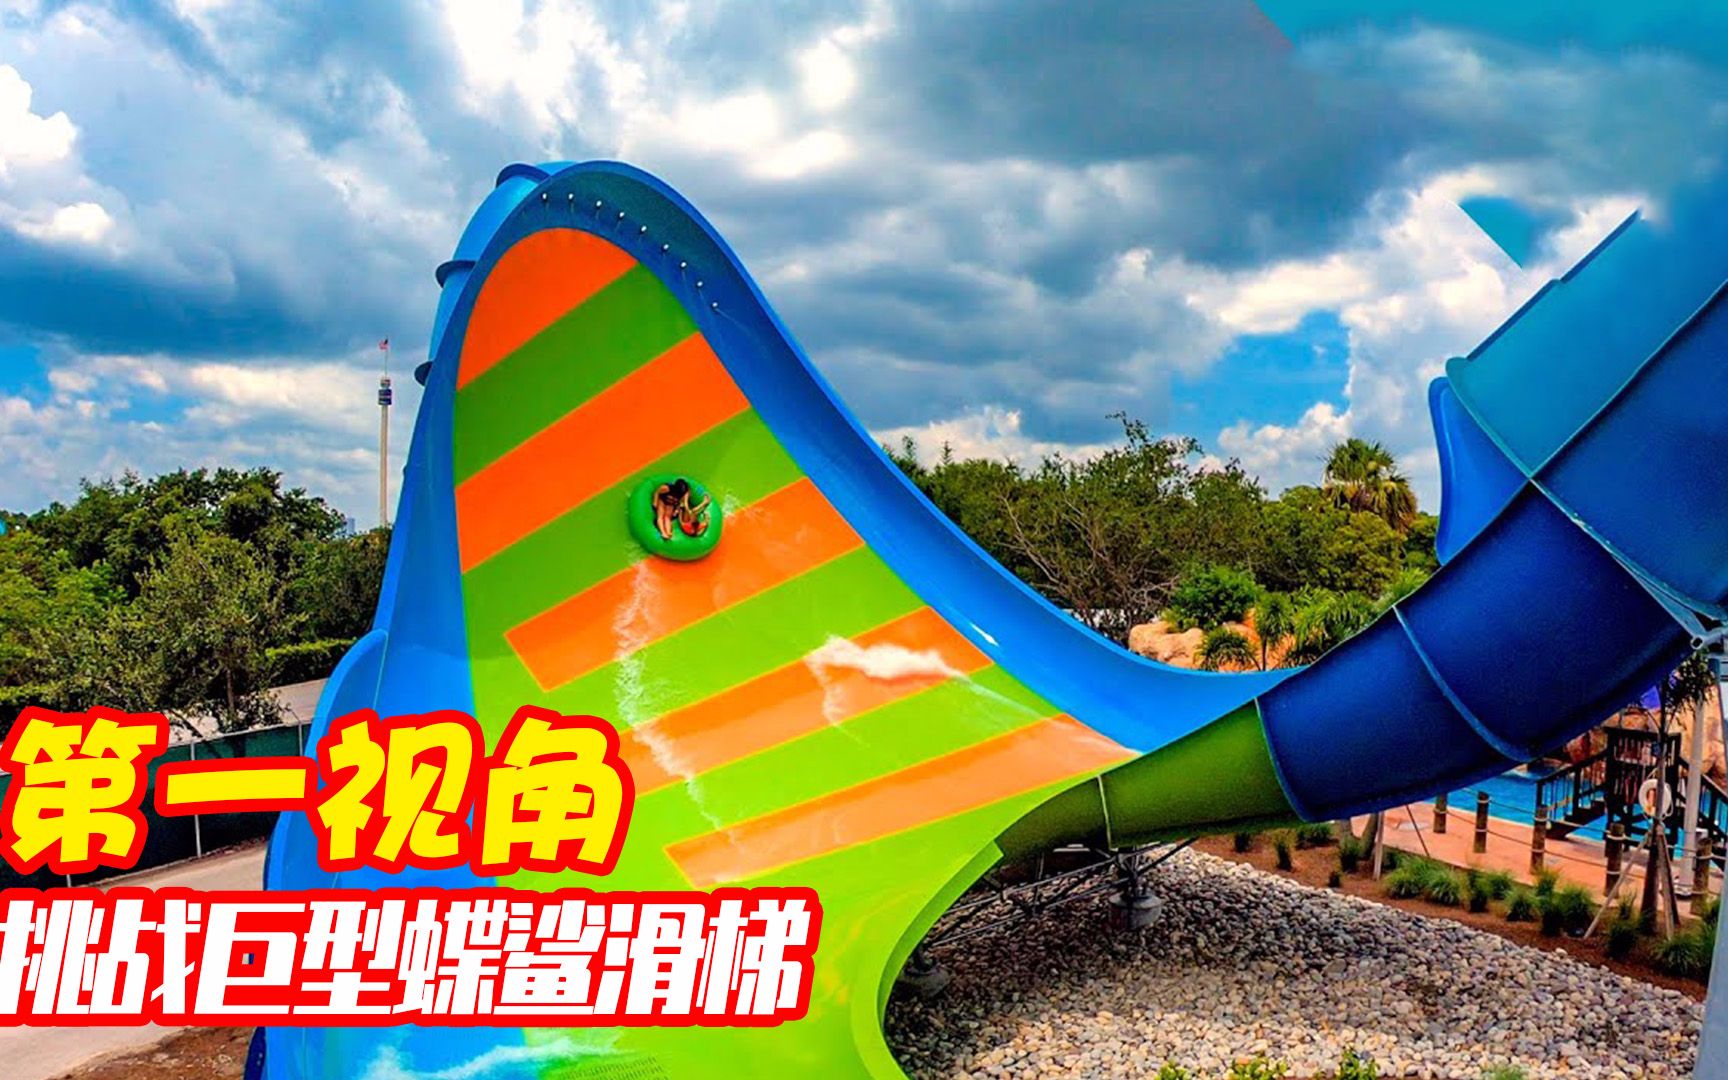 你敢挑战世界上最恐怖的巨型蝶鲨滑梯吗?第一视角带你体验刺激!